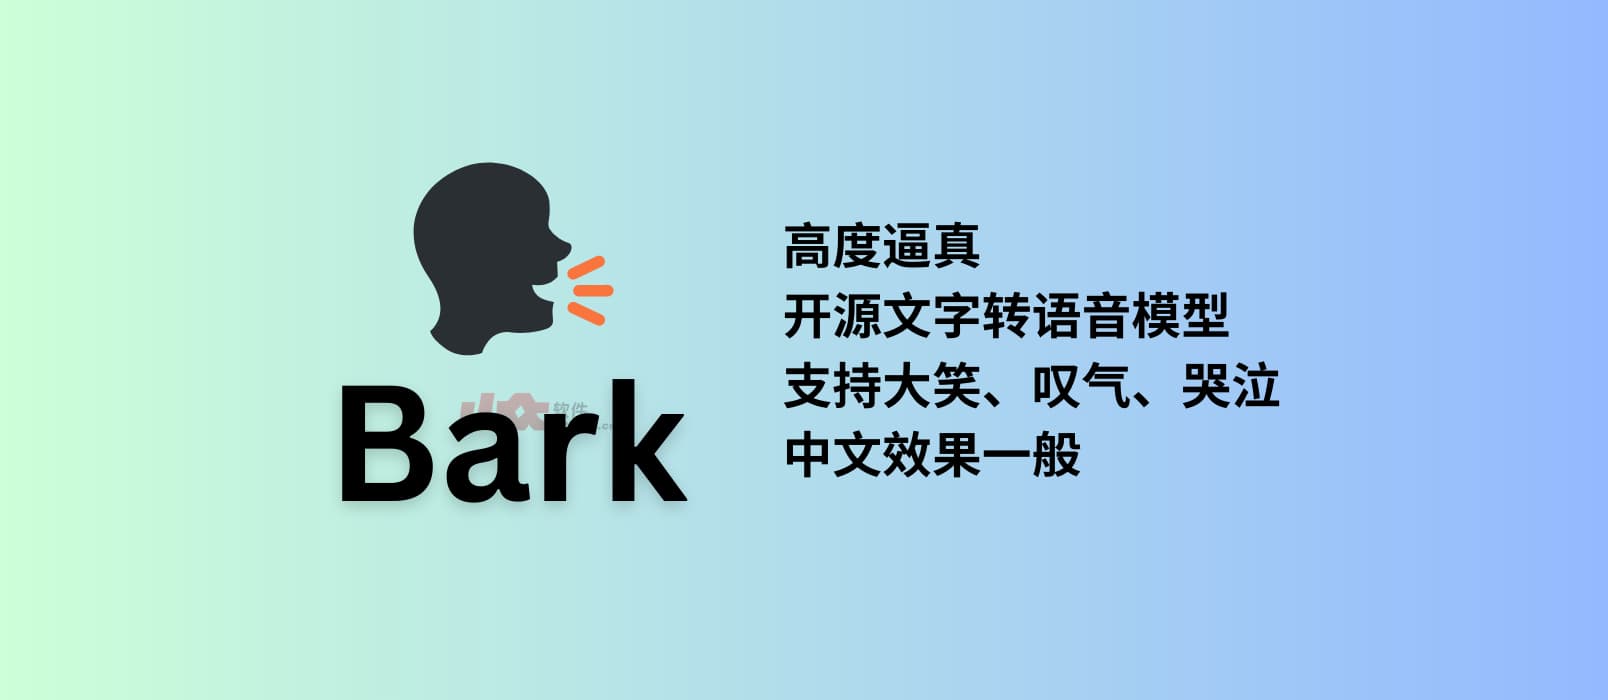 Bark - 高度逼真的开源、生成式文字转语音模型 1